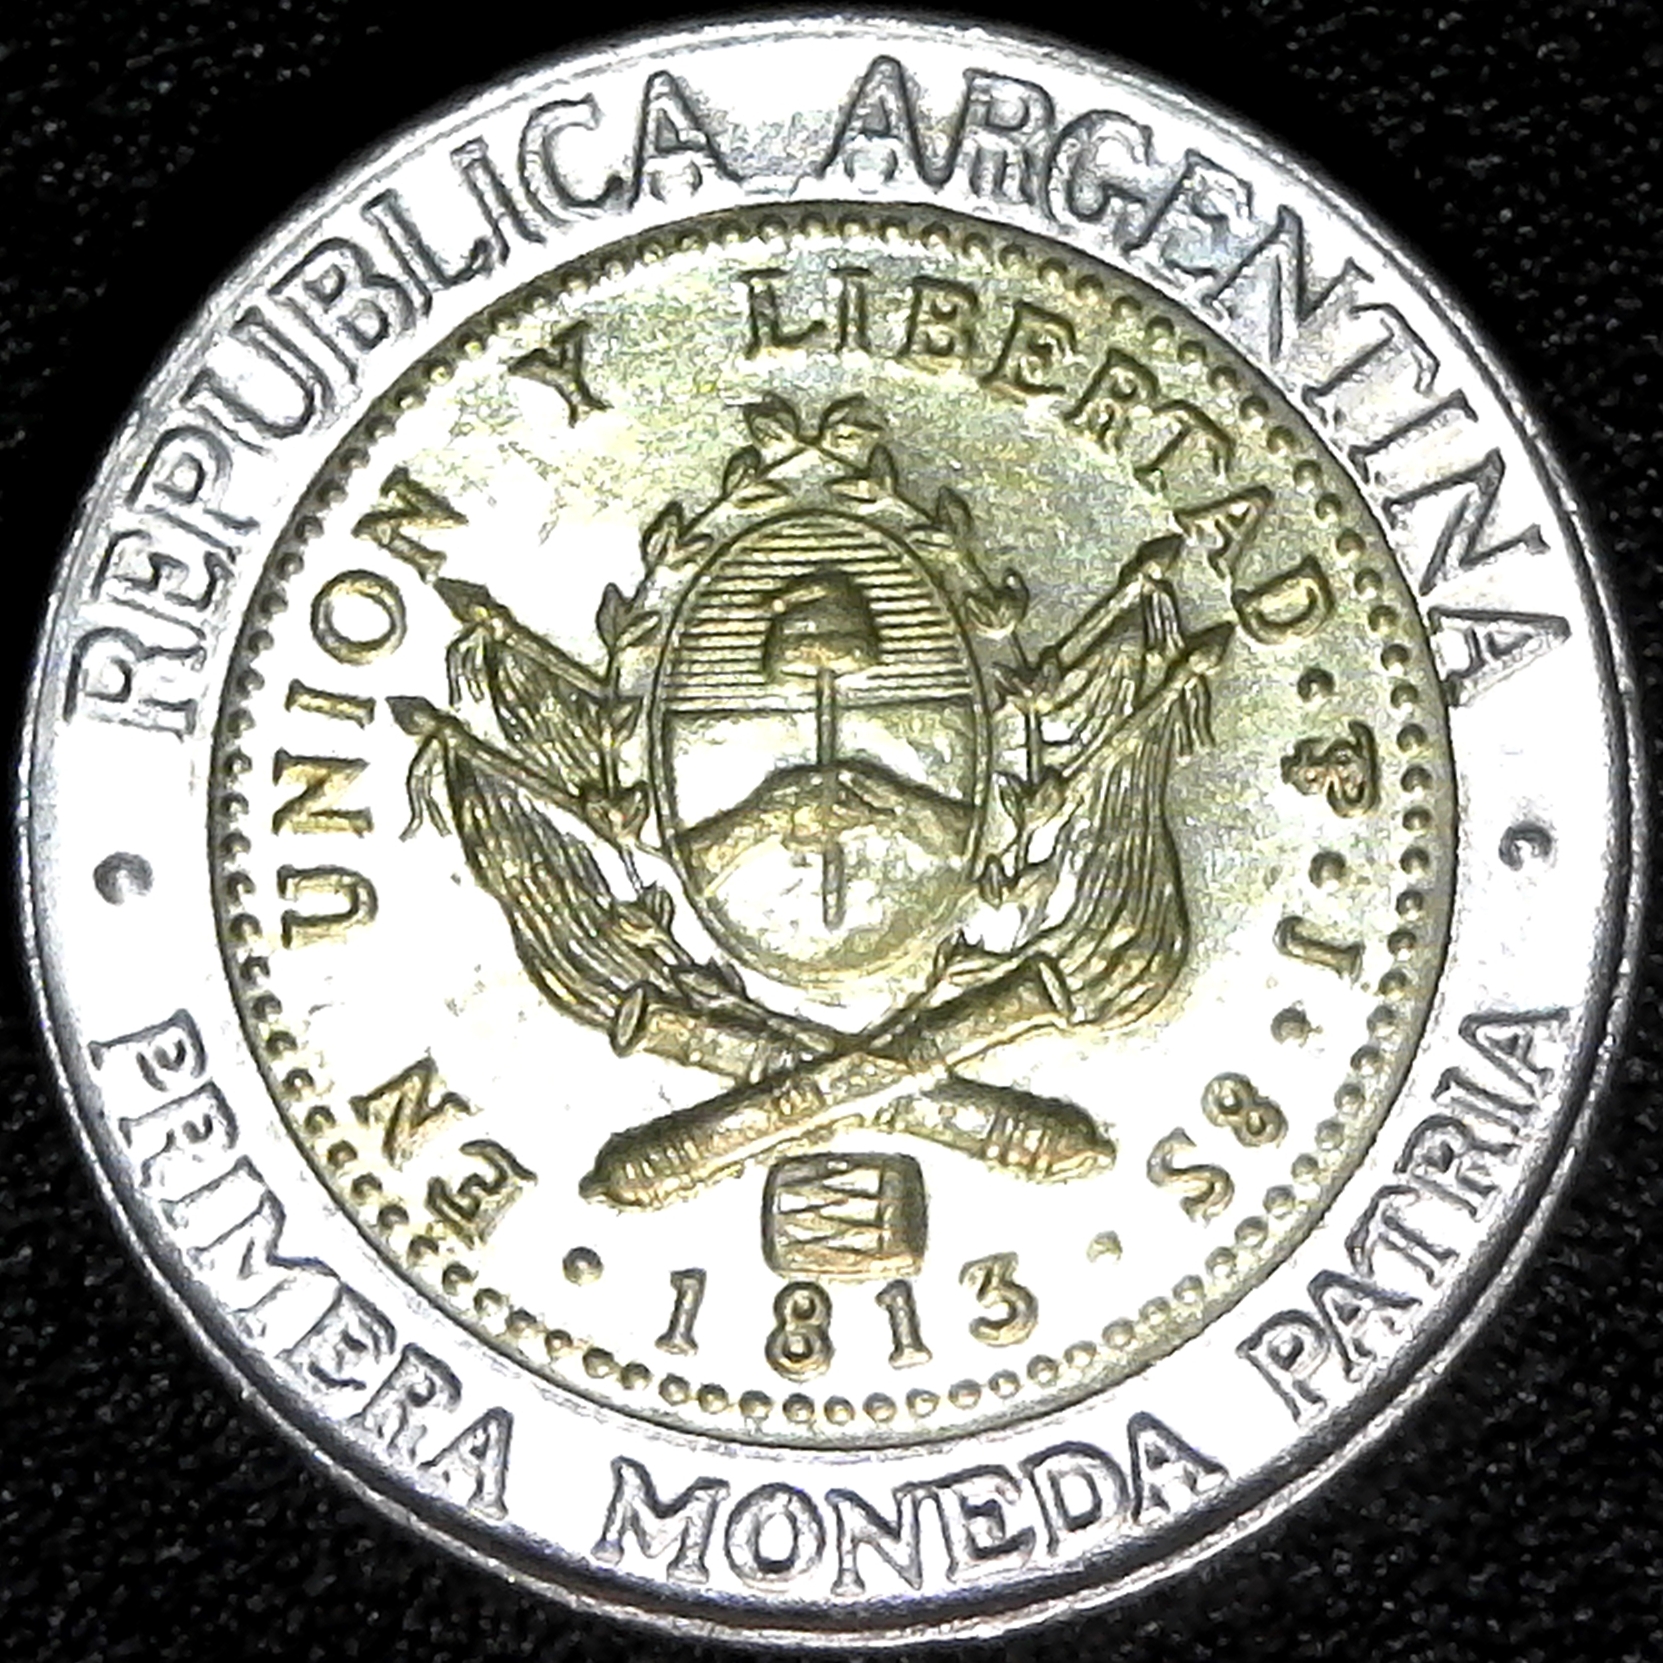 Argentina 1 Peso 2008 obv.jpg